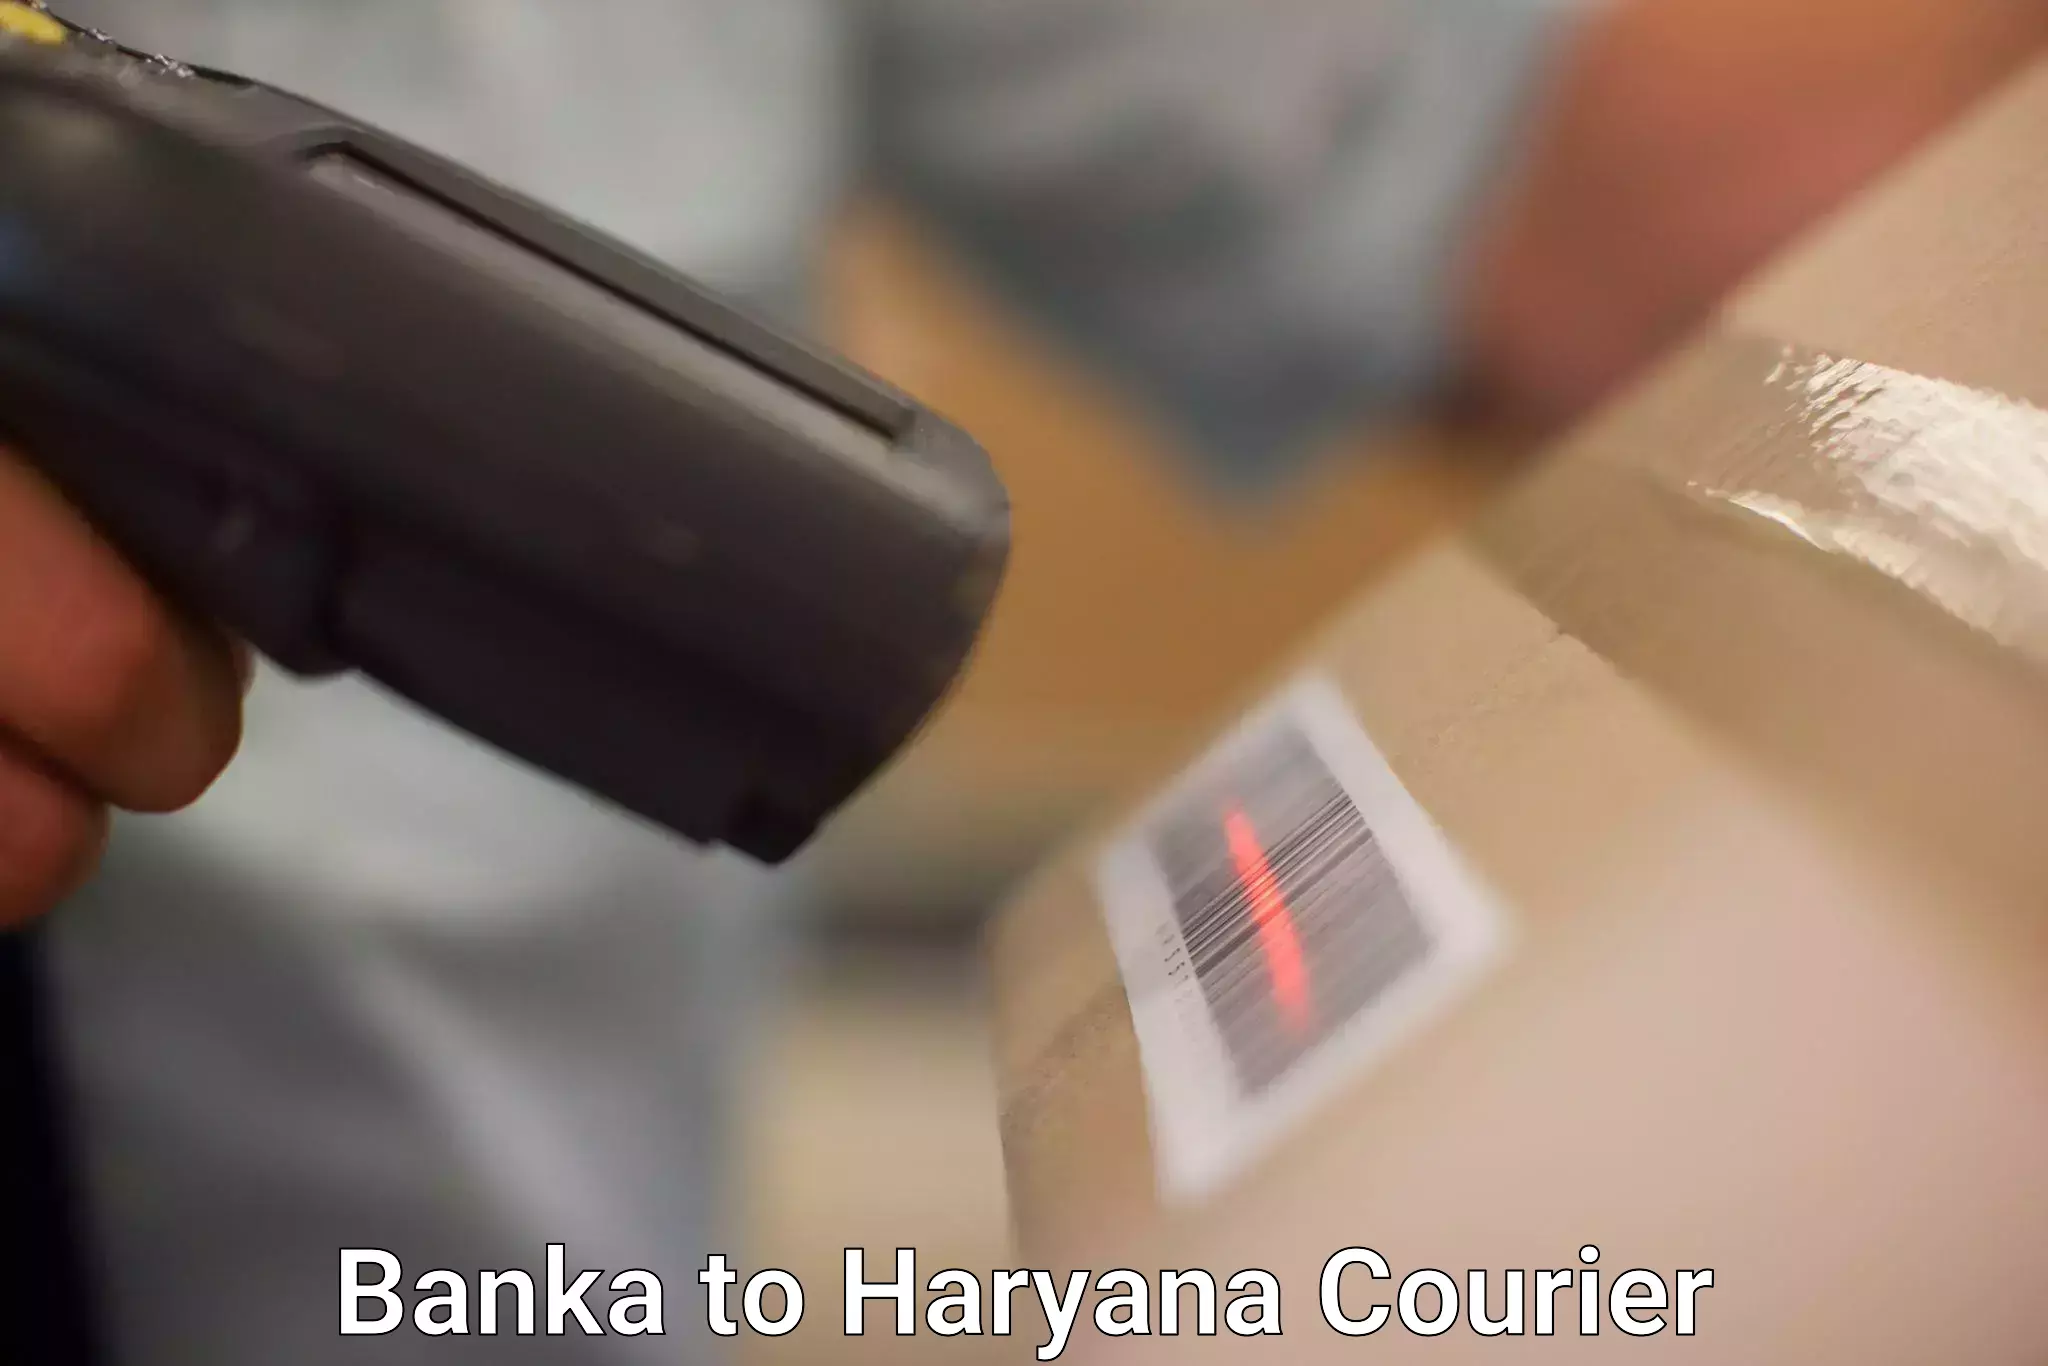 Reliable shipping partners Banka to Hansi